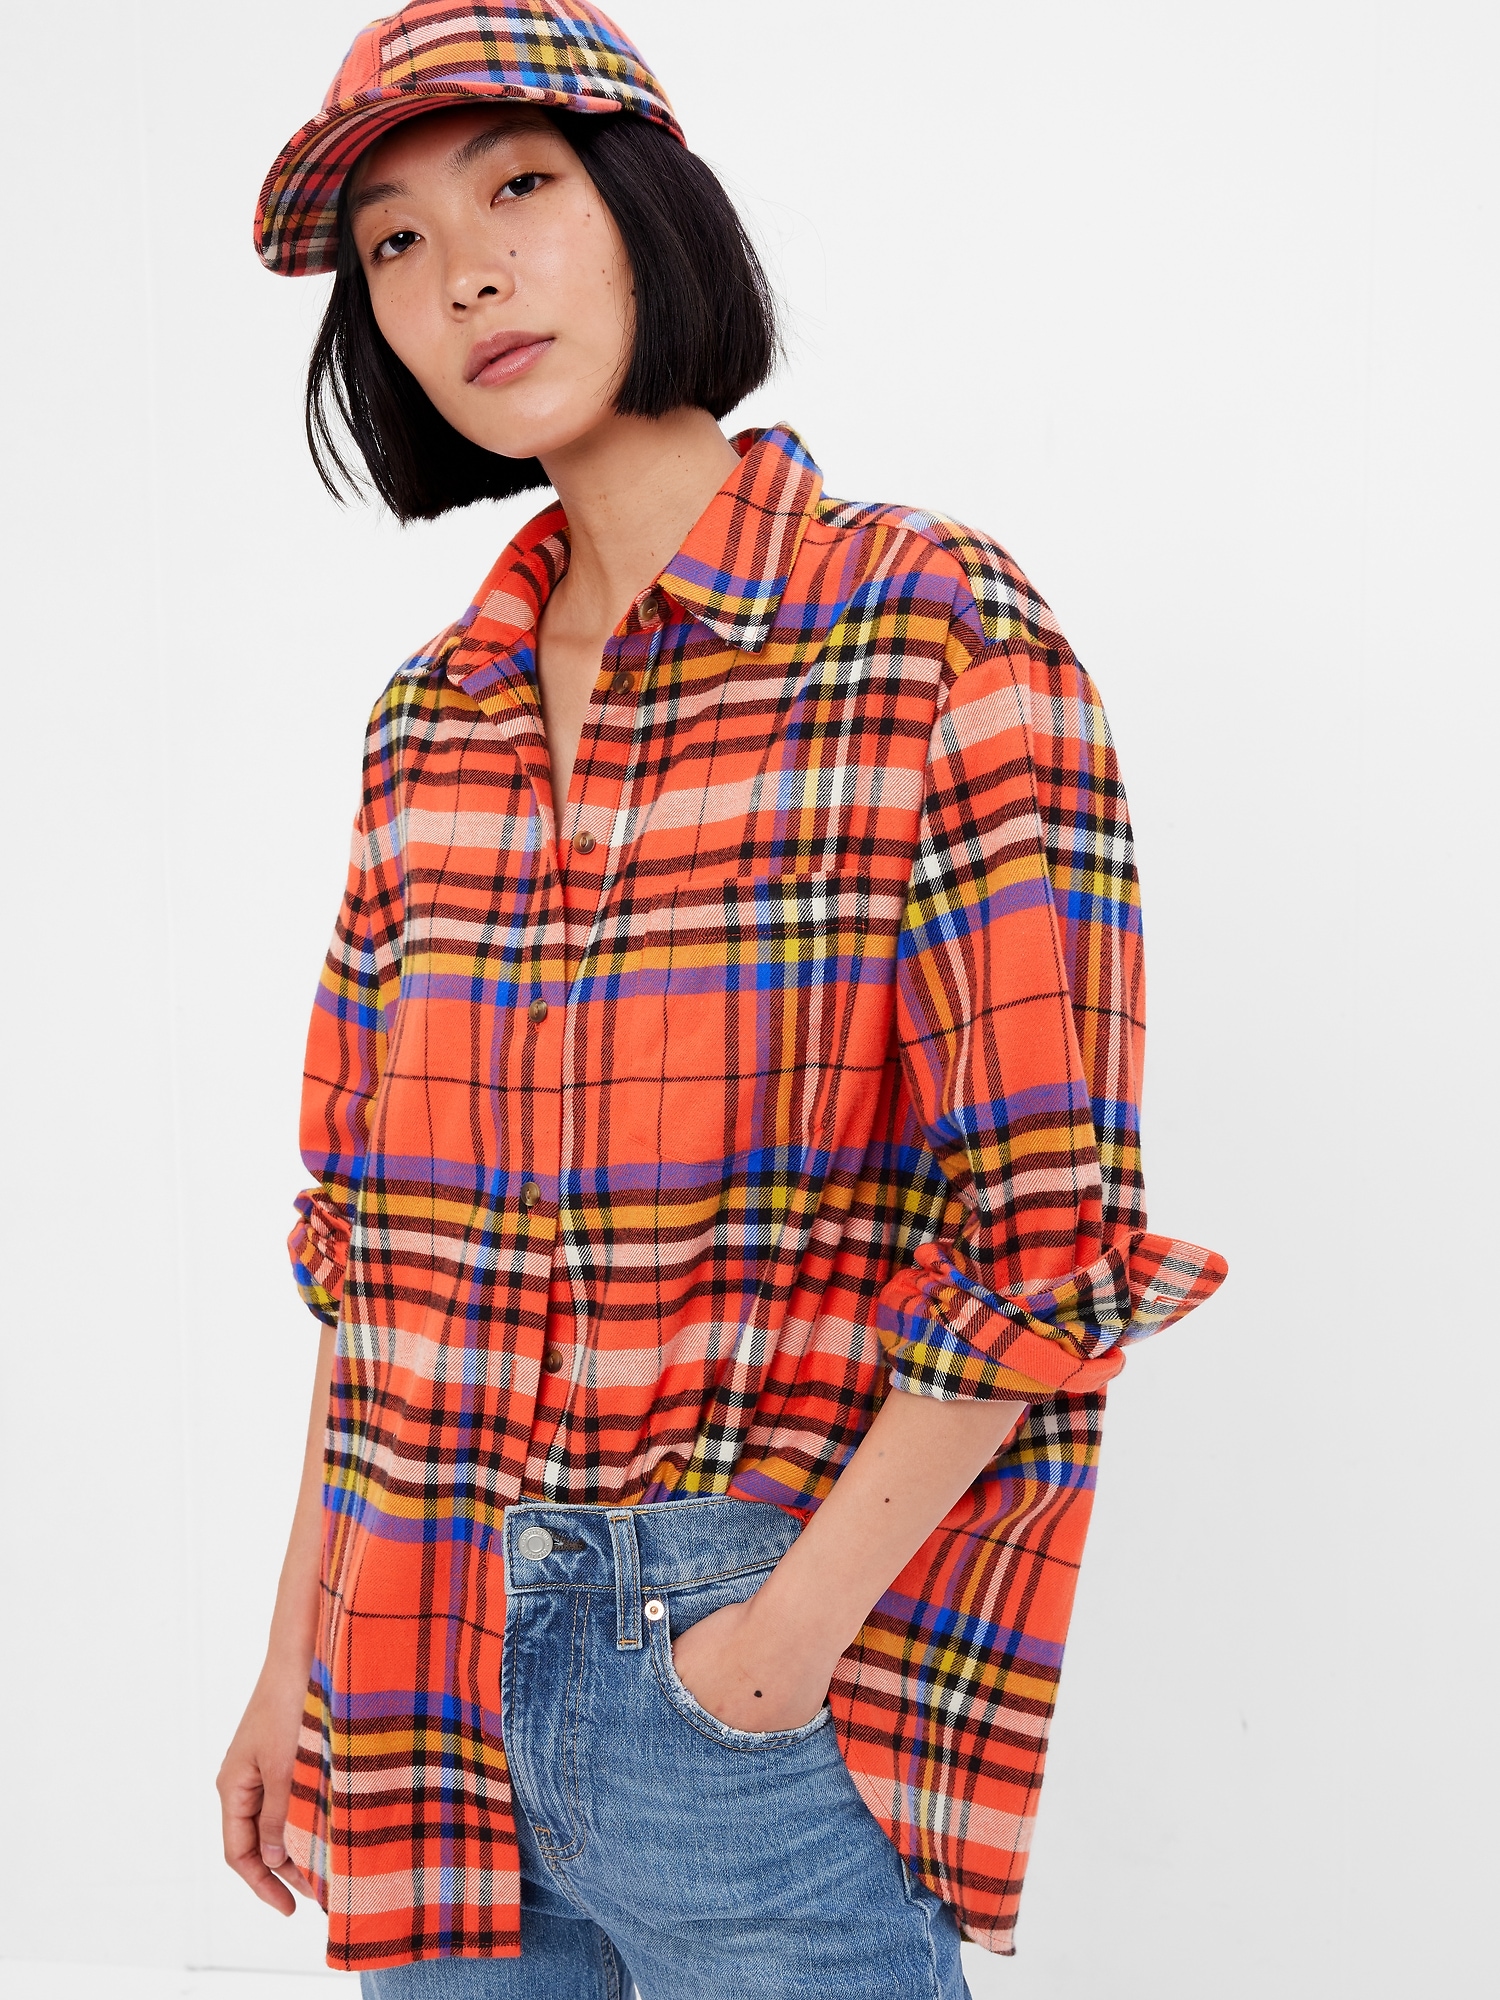 Flannel Big Shirt | Gap